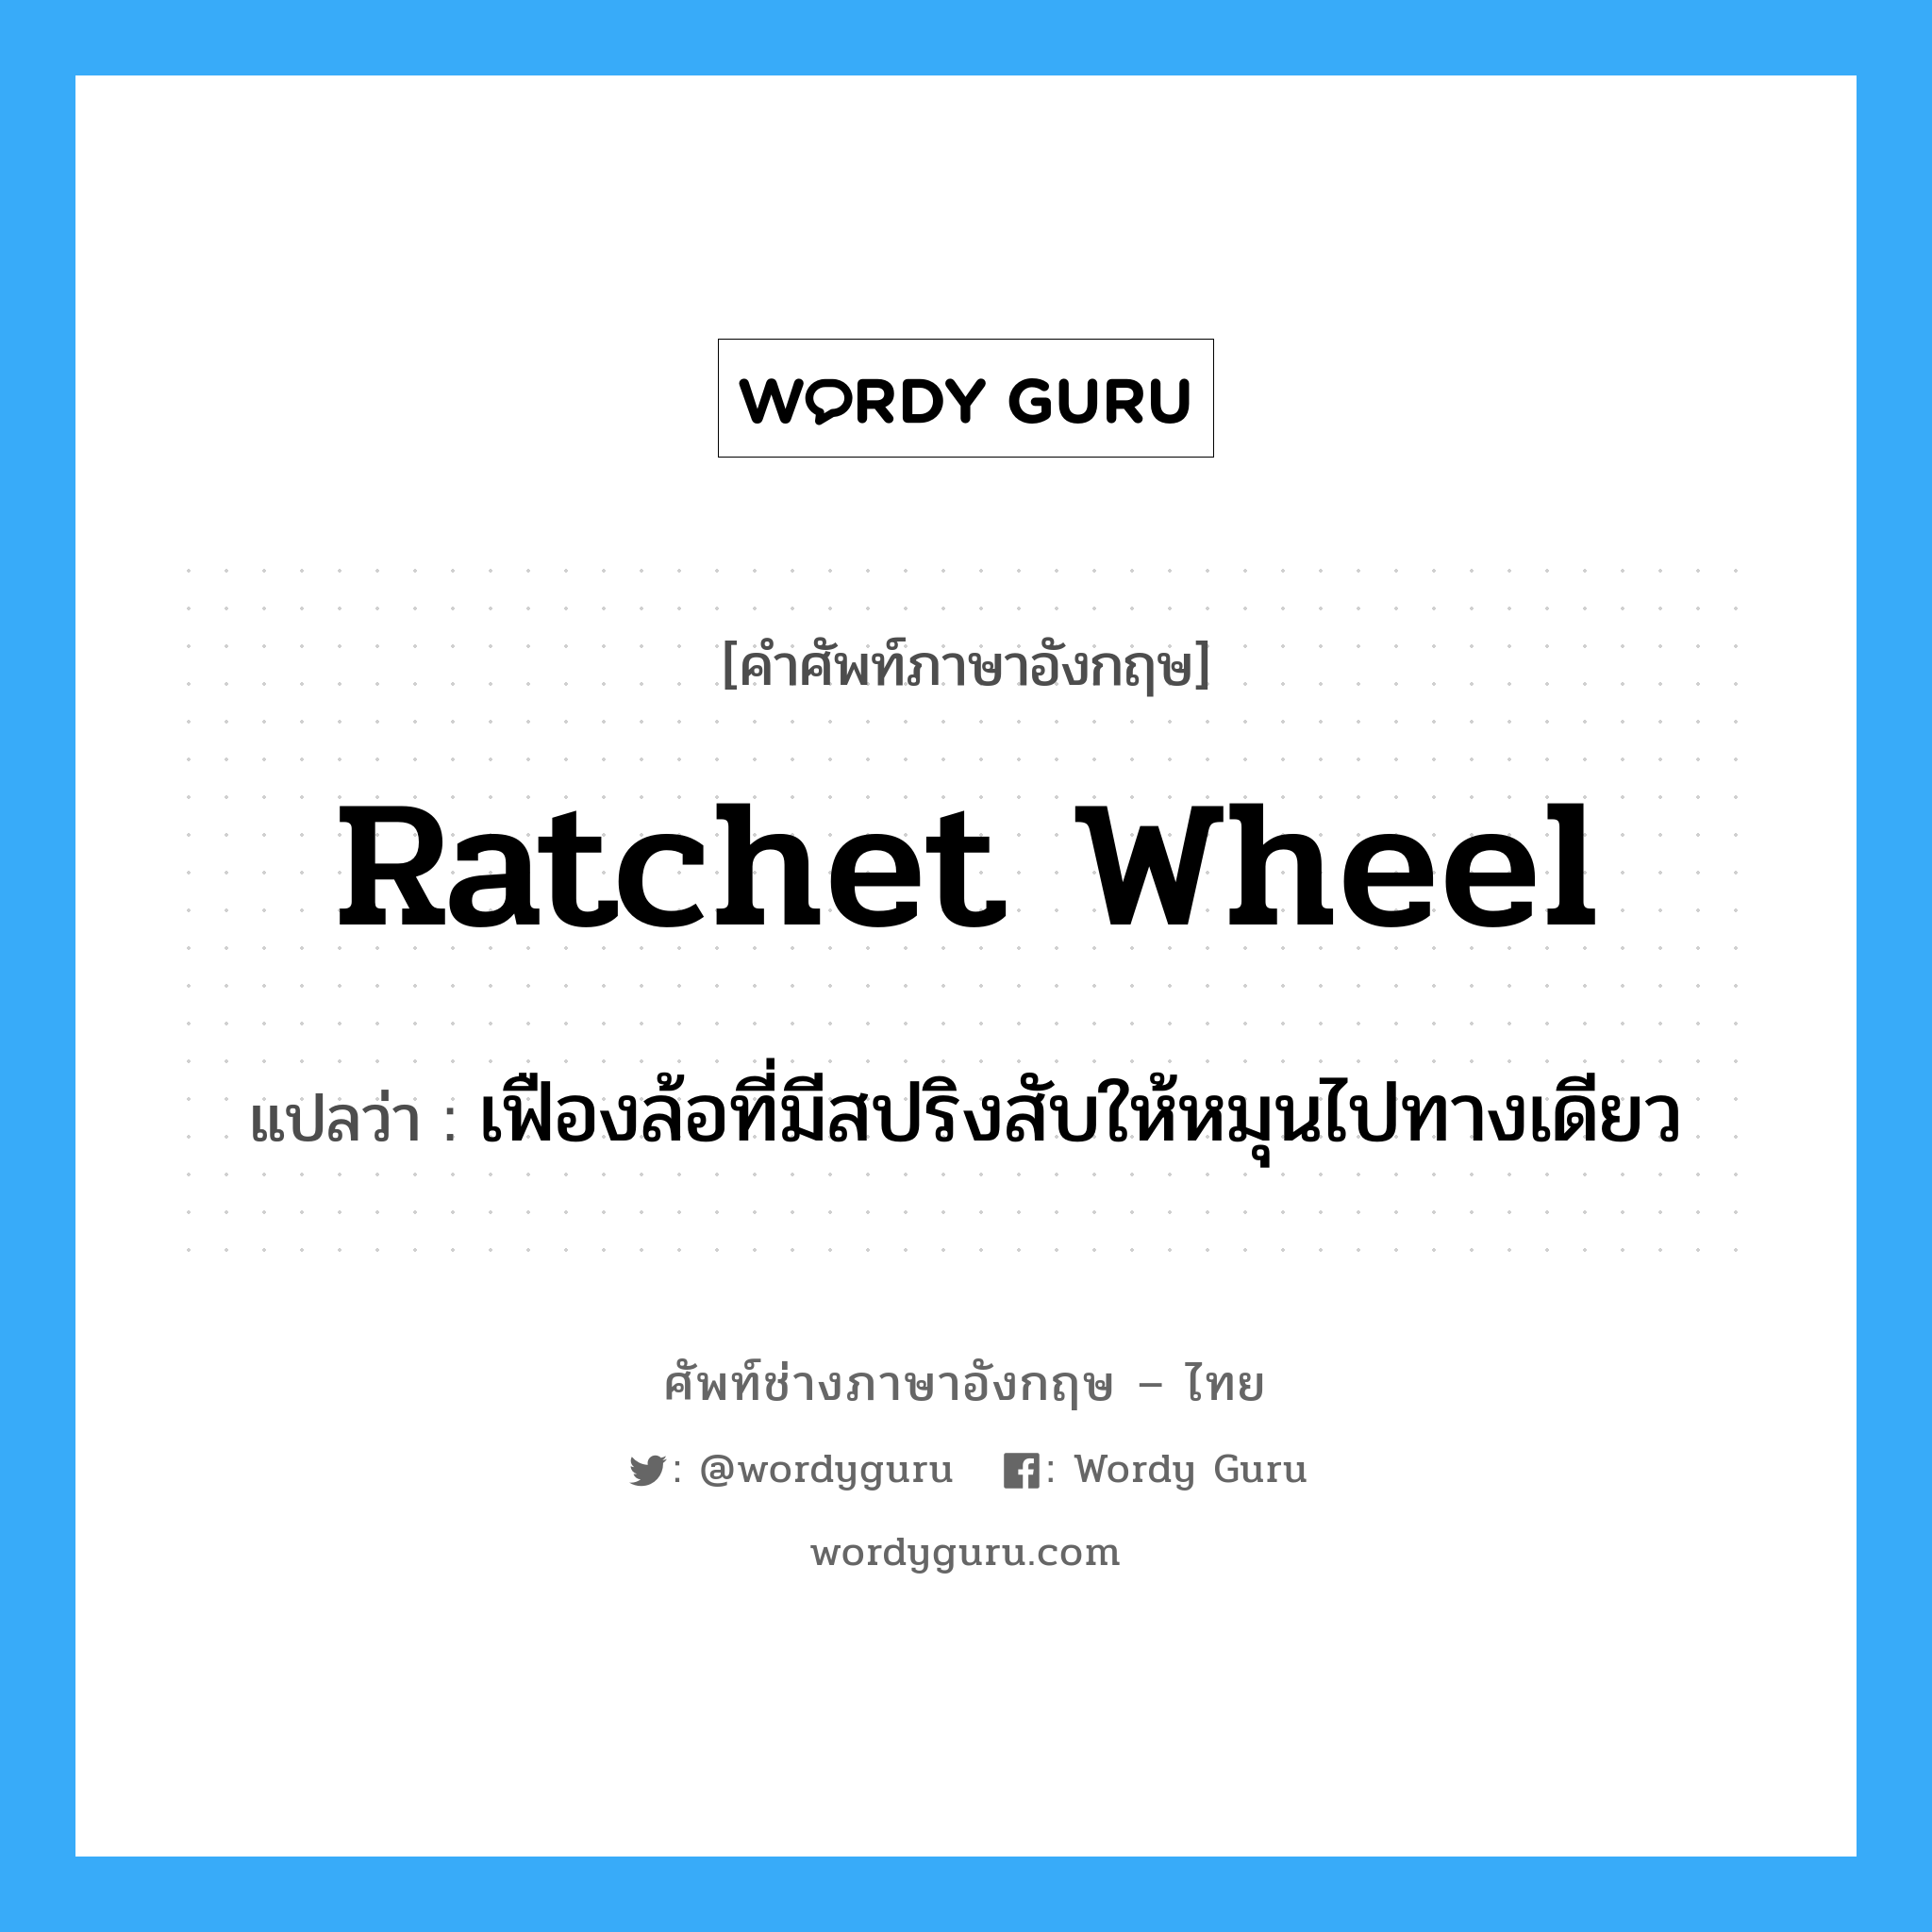 ratchet wheel แปลว่า?, คำศัพท์ช่างภาษาอังกฤษ - ไทย ratchet wheel คำศัพท์ภาษาอังกฤษ ratchet wheel แปลว่า เฟืองล้อที่มีสปริงสับให้หมุนไปทางเดียว